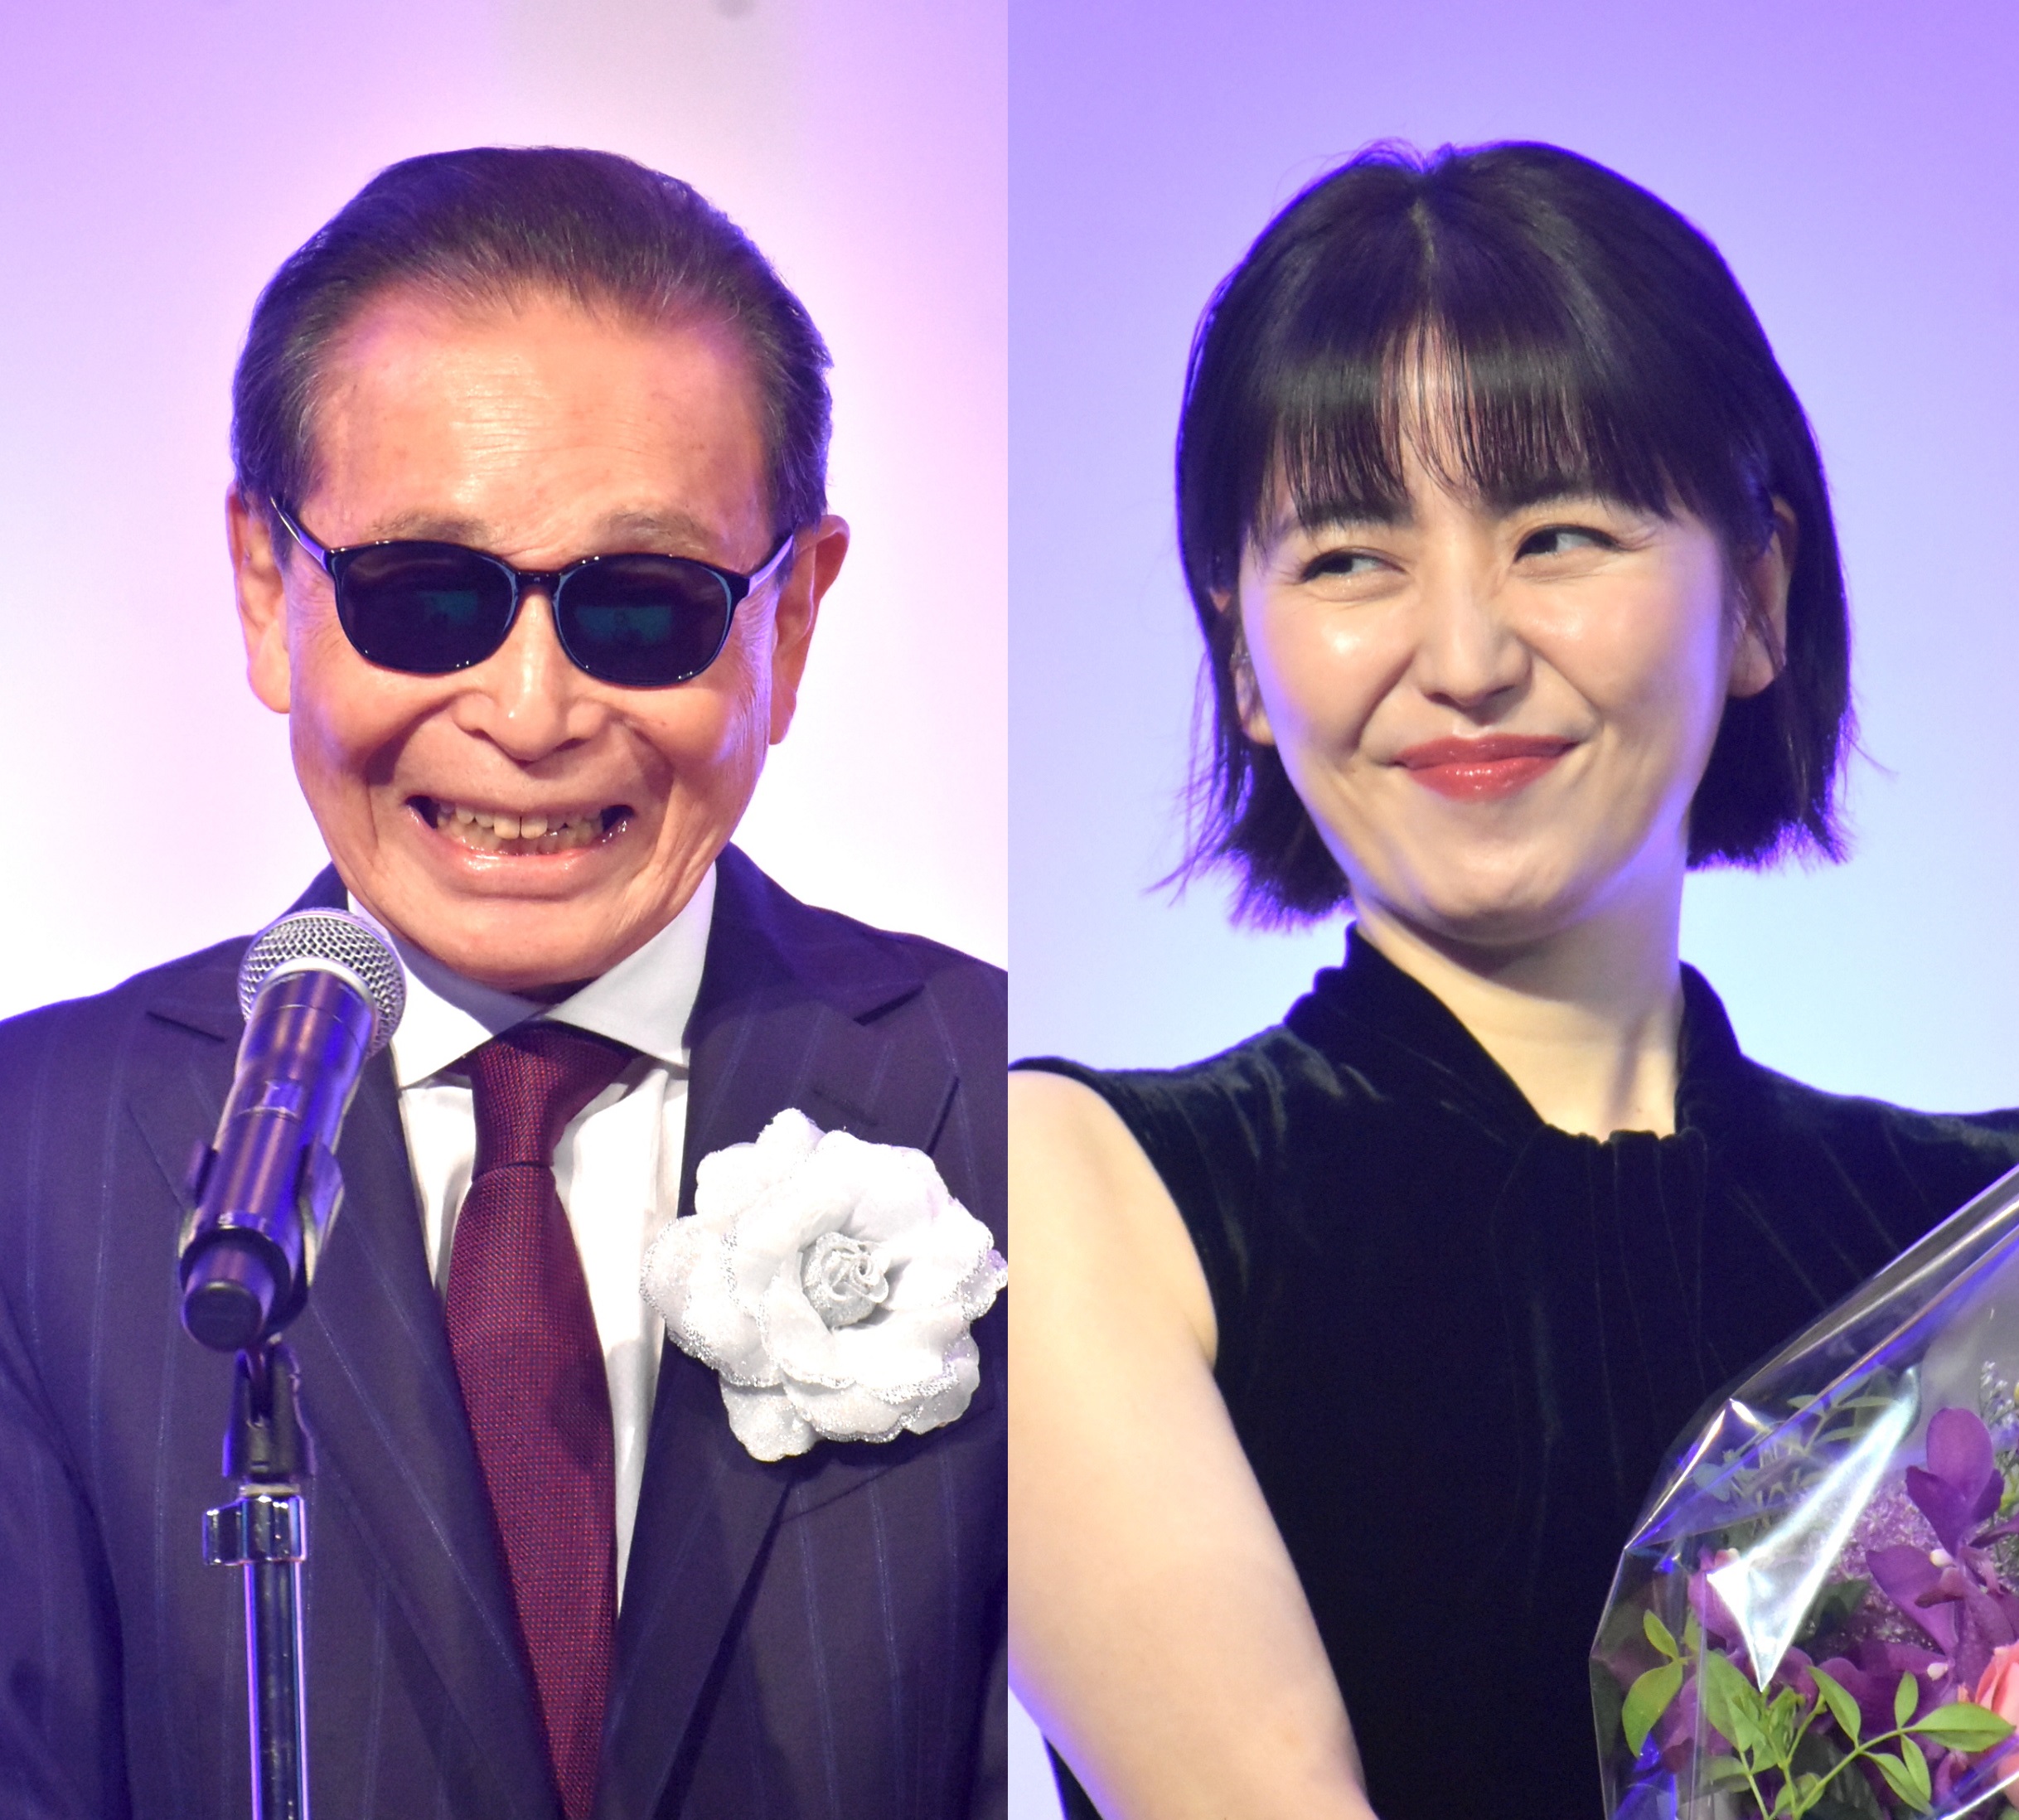 5月31日に開催された第60回ギャラクシー賞贈賞式（主催：放送批評懇談会）で受賞者のタレント・タモリと女優・長澤まさみ。ともに笑顔を見せた